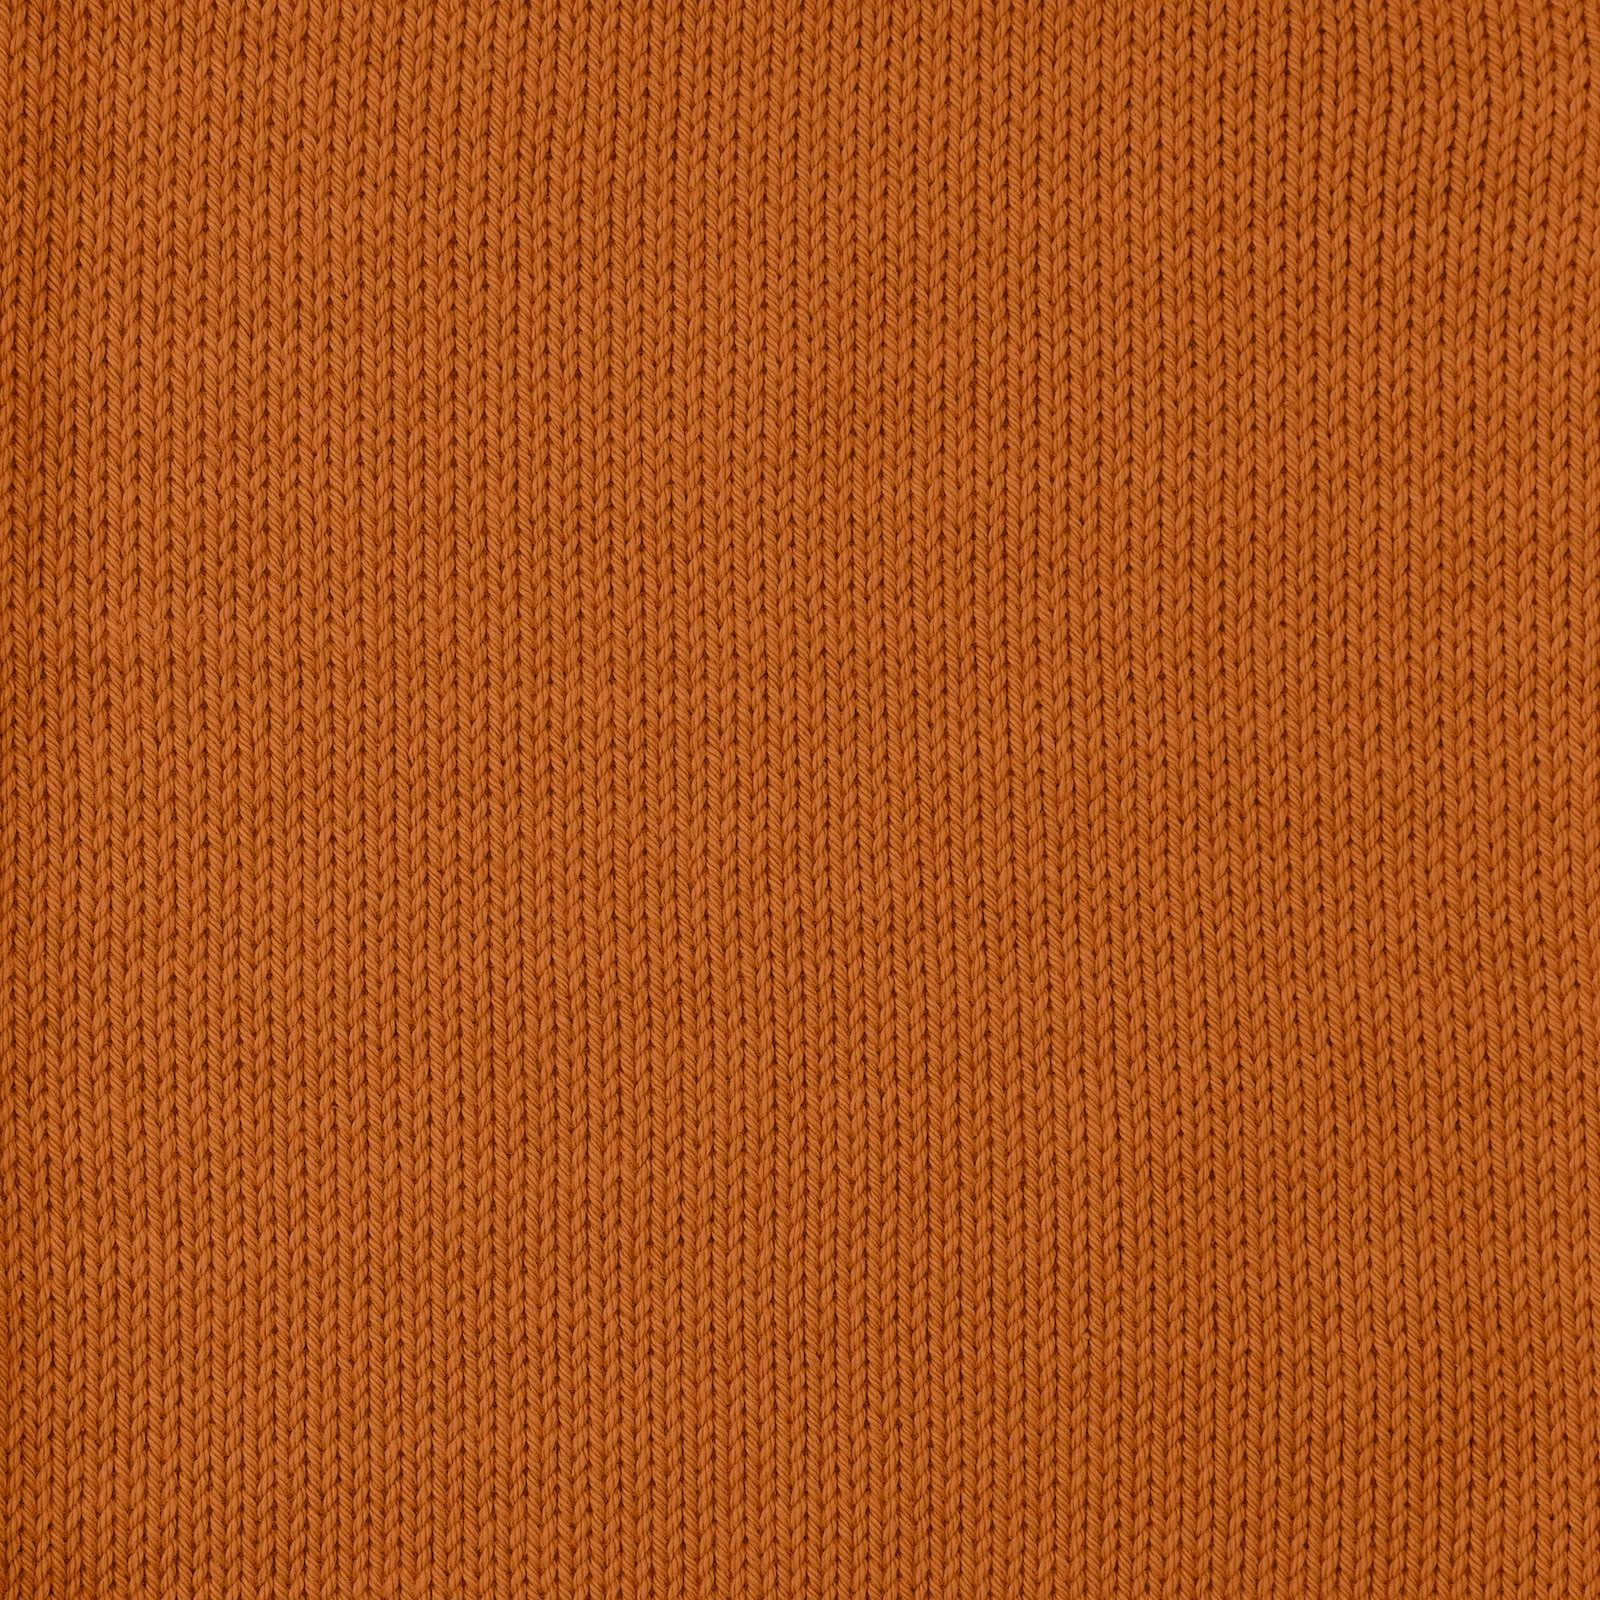 FRAYA, 100% cotton 8/4  yarn  "Colourful", pumpkin 90060009_sskit